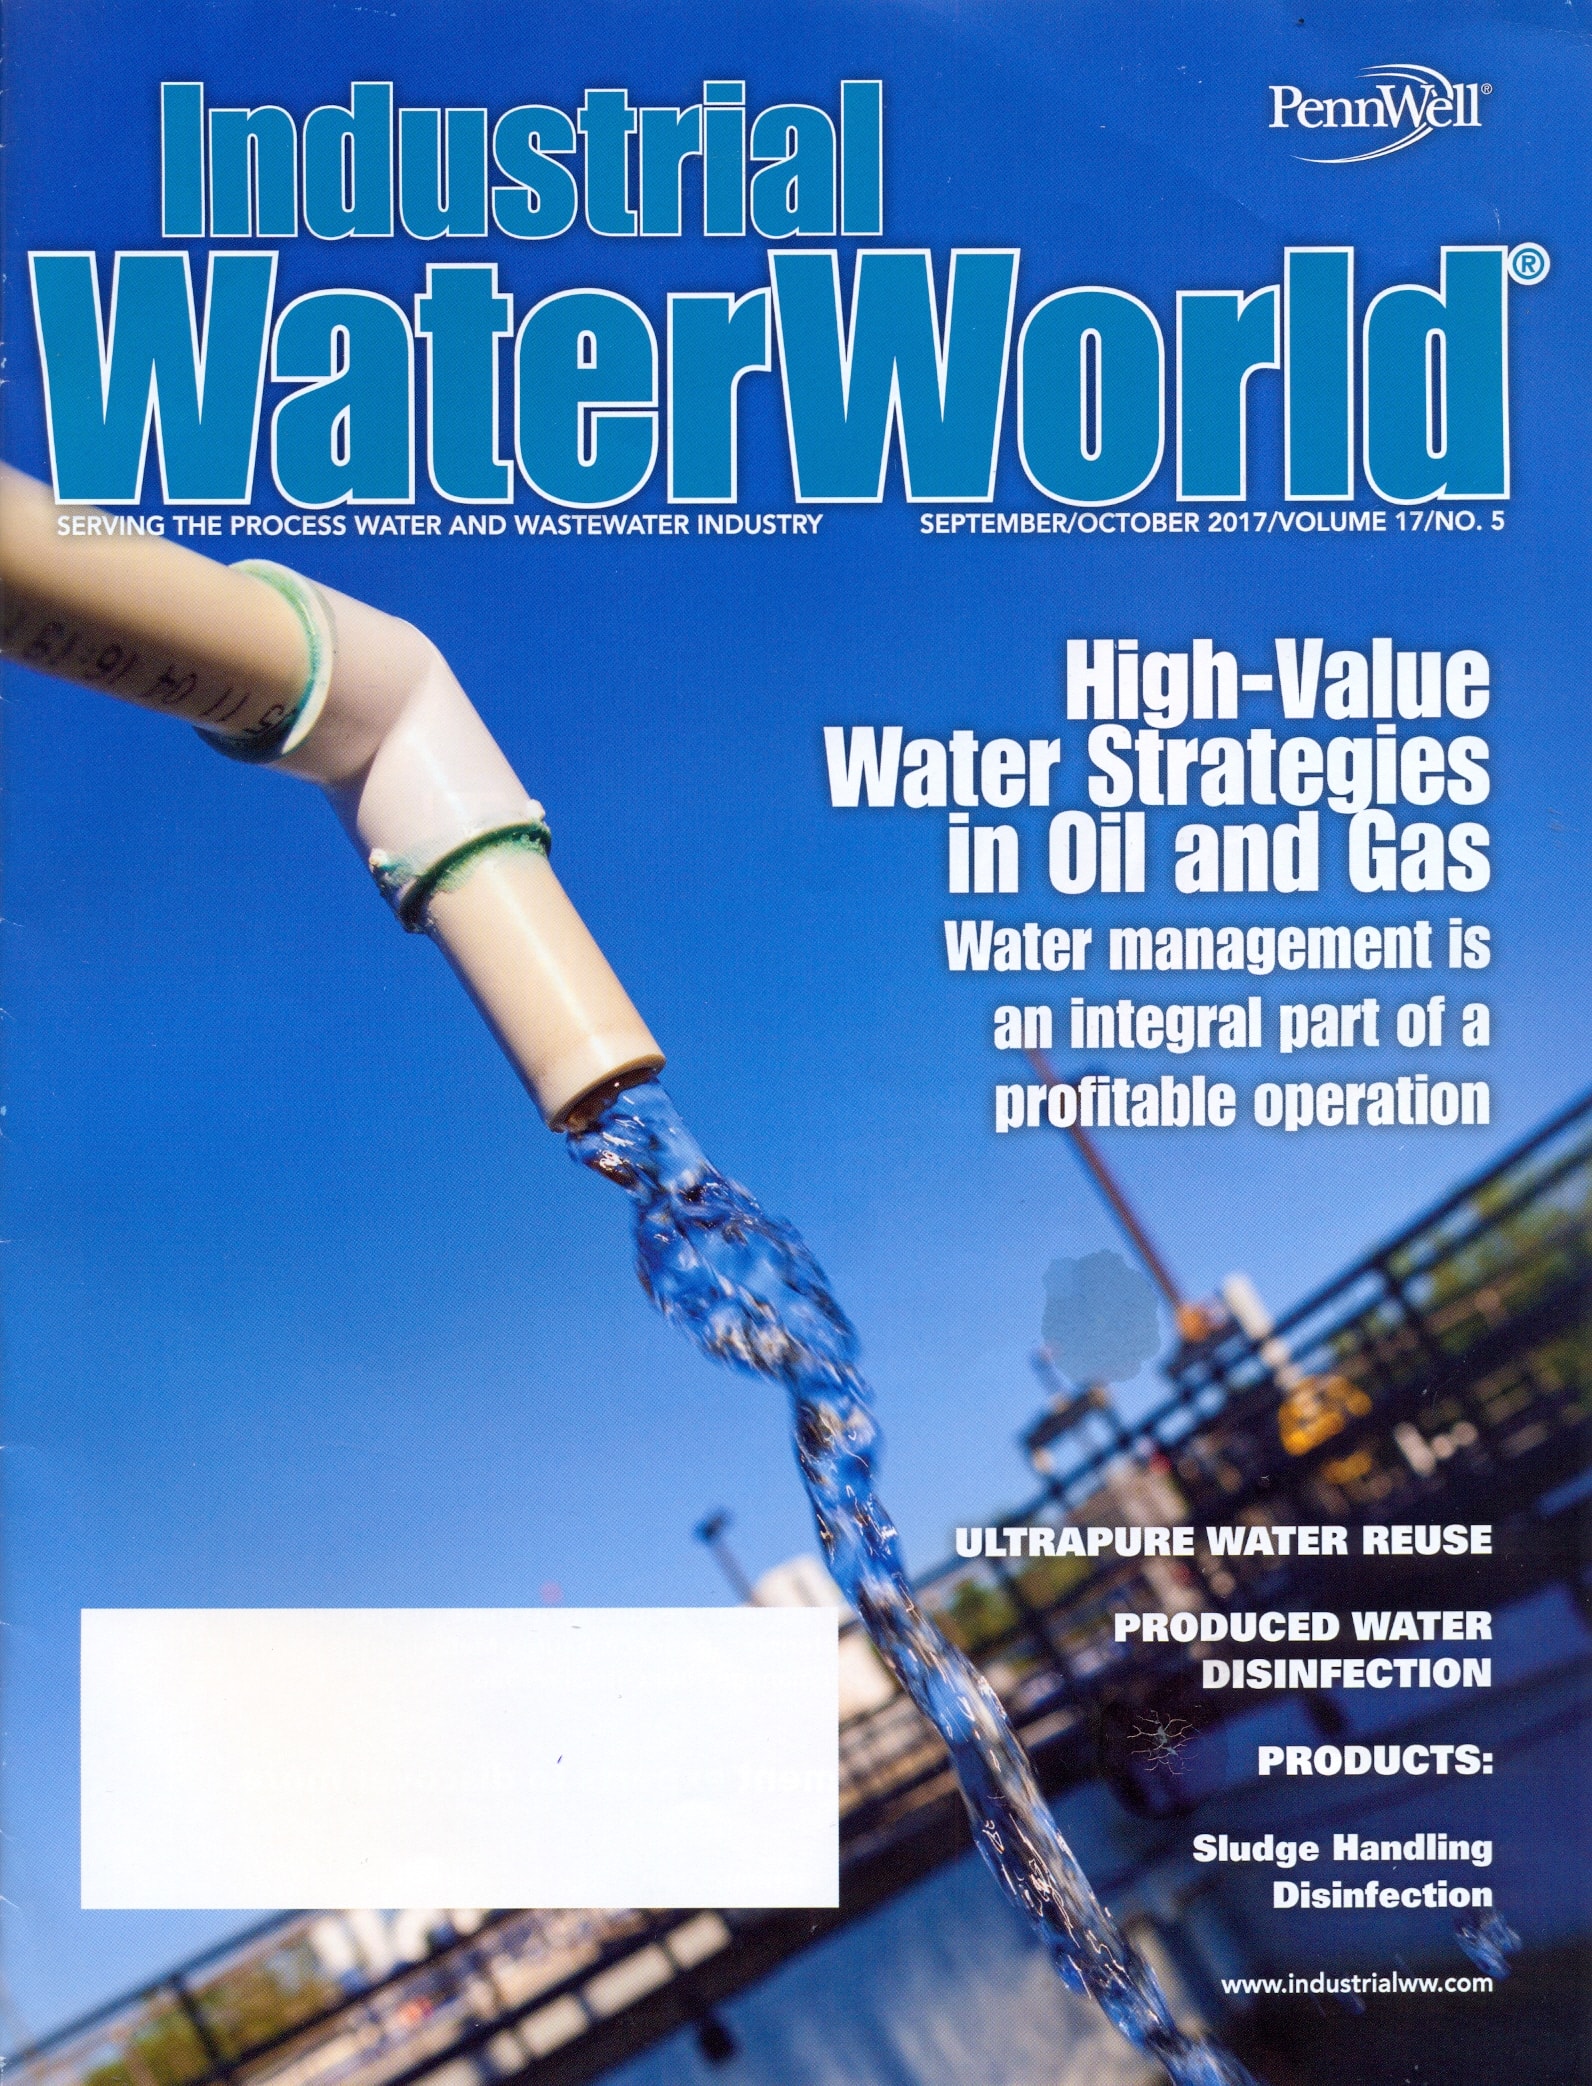 GlobeCore in der Presse: “Industrial WaterWorld” Magazin